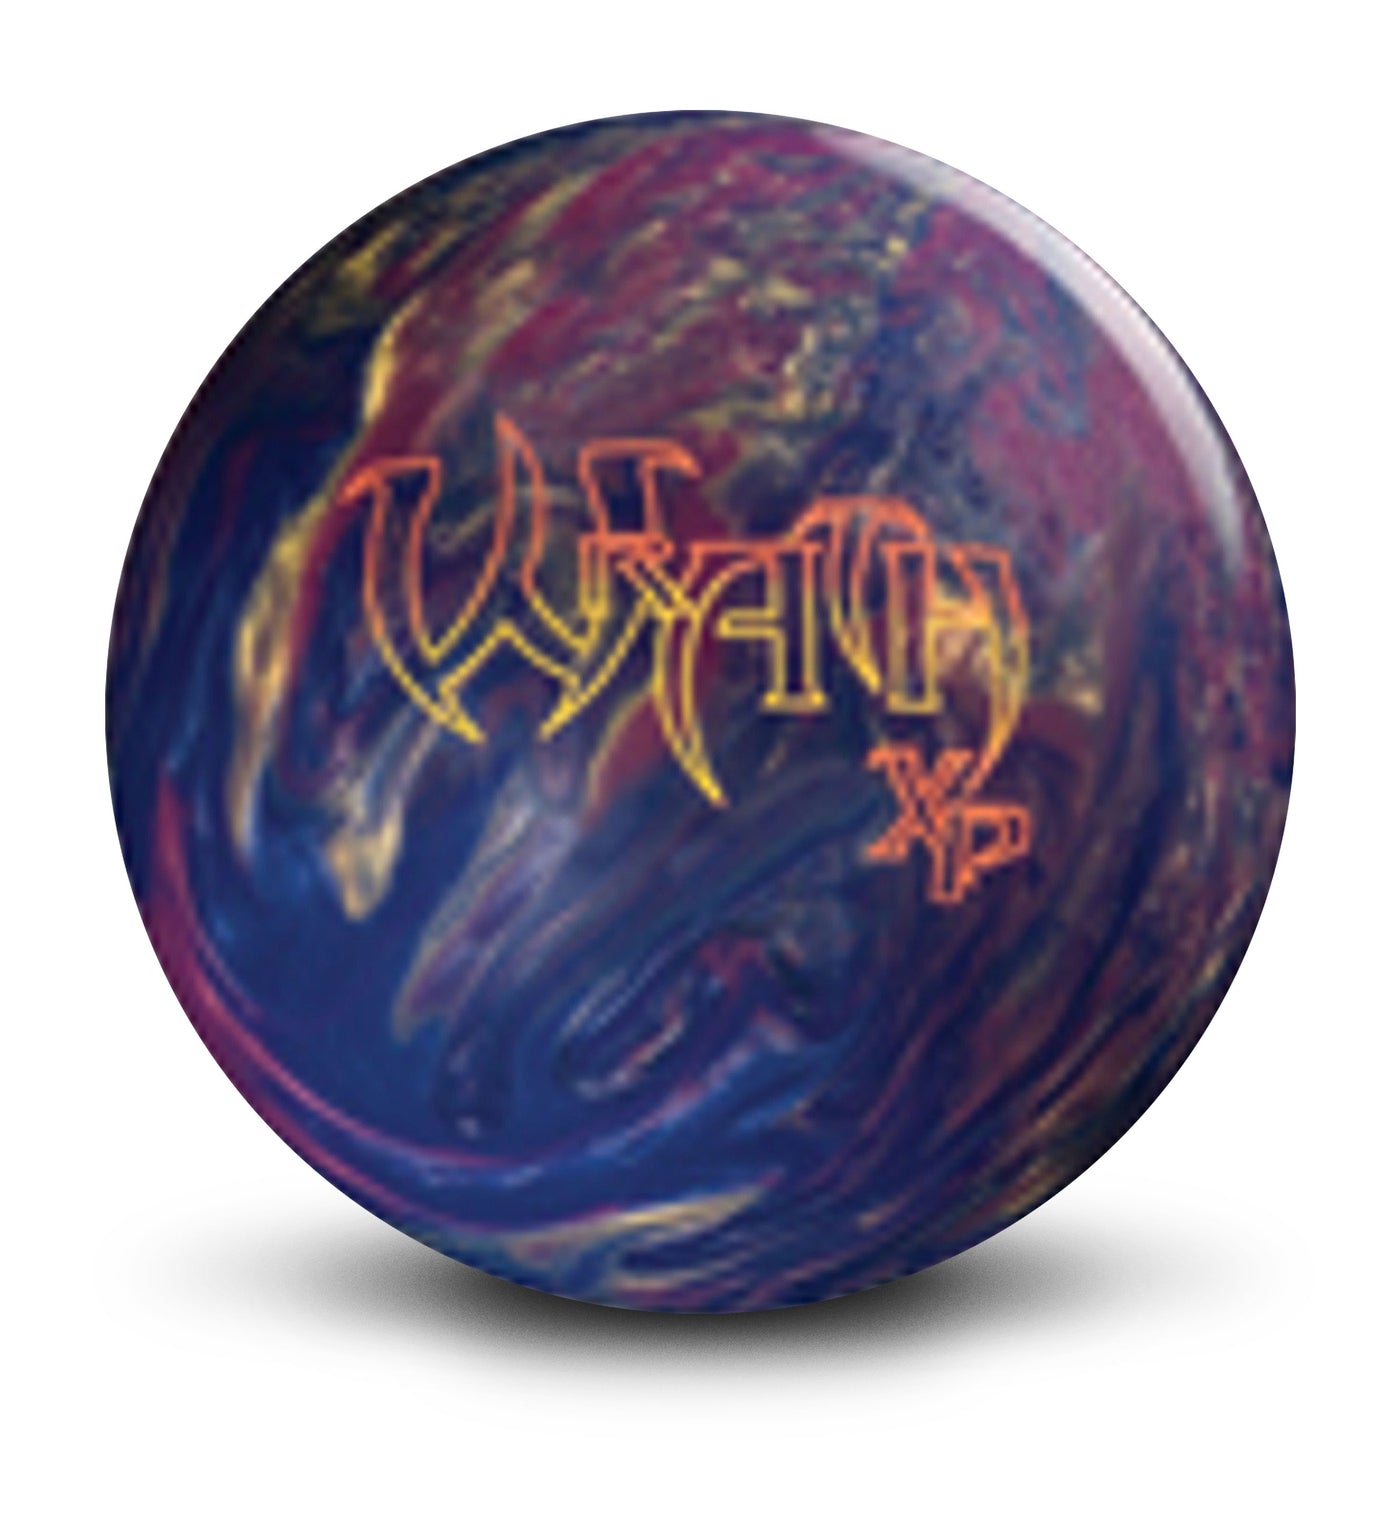 Wrath XP bowling ball